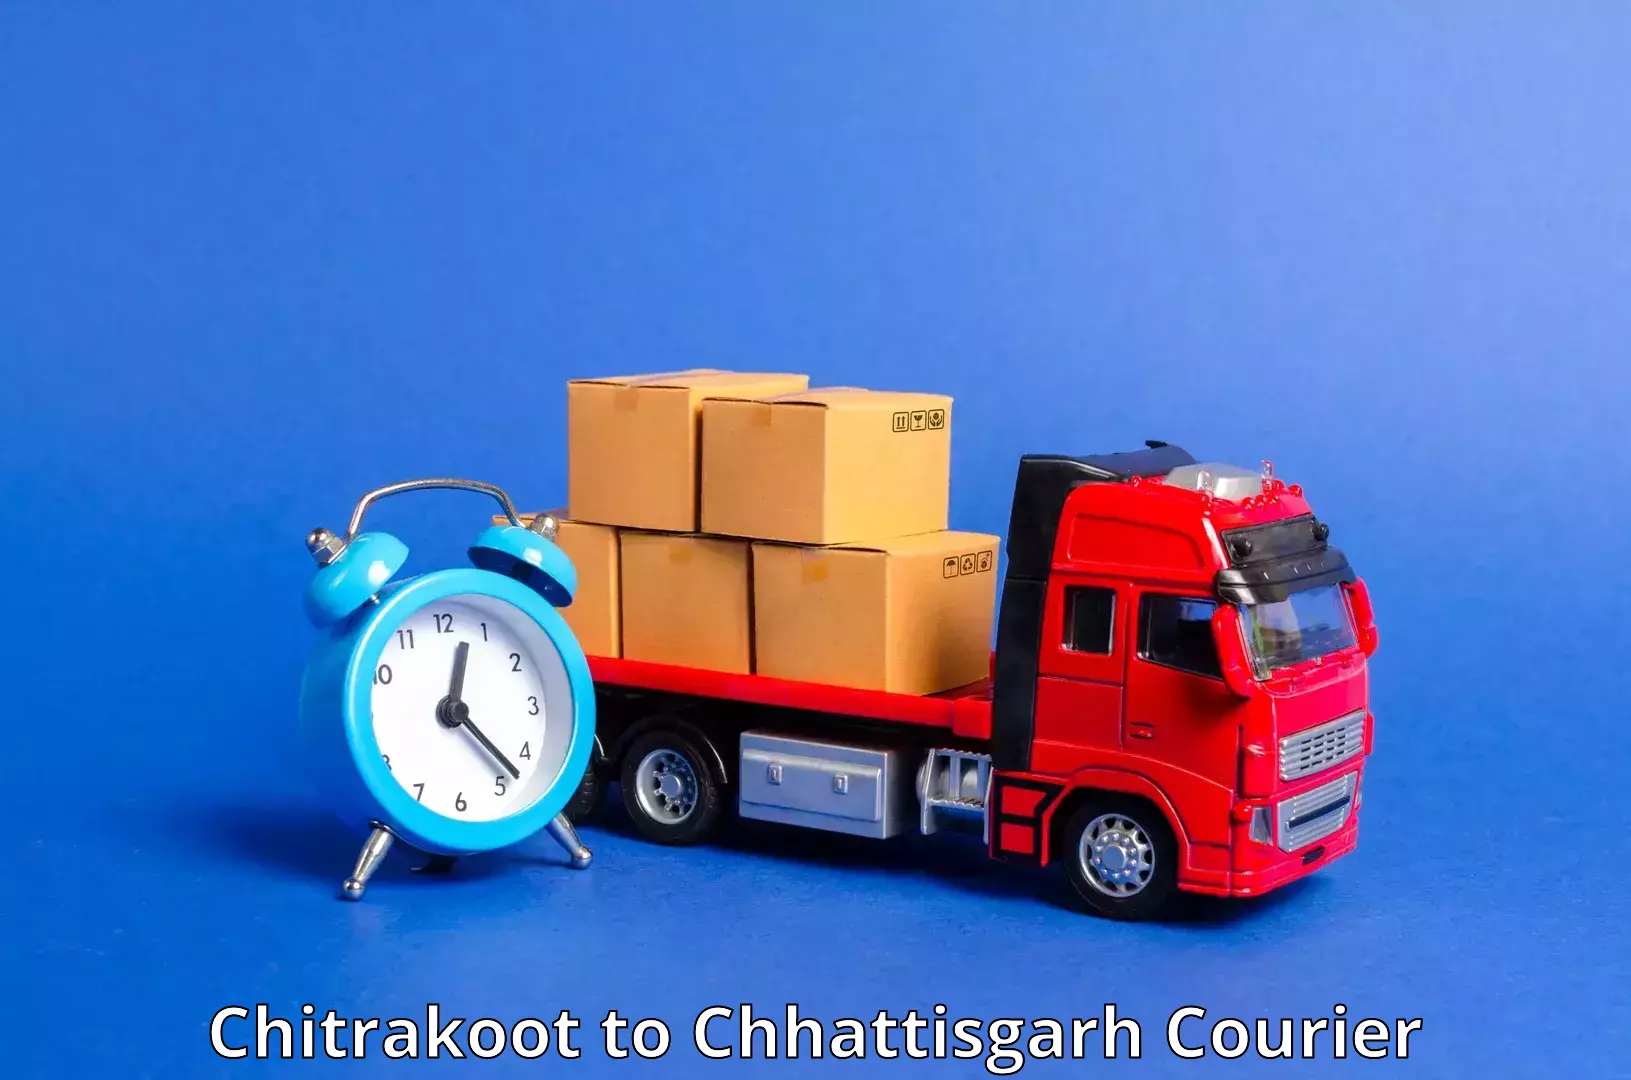 Express postal services Chitrakoot to Bhatapara